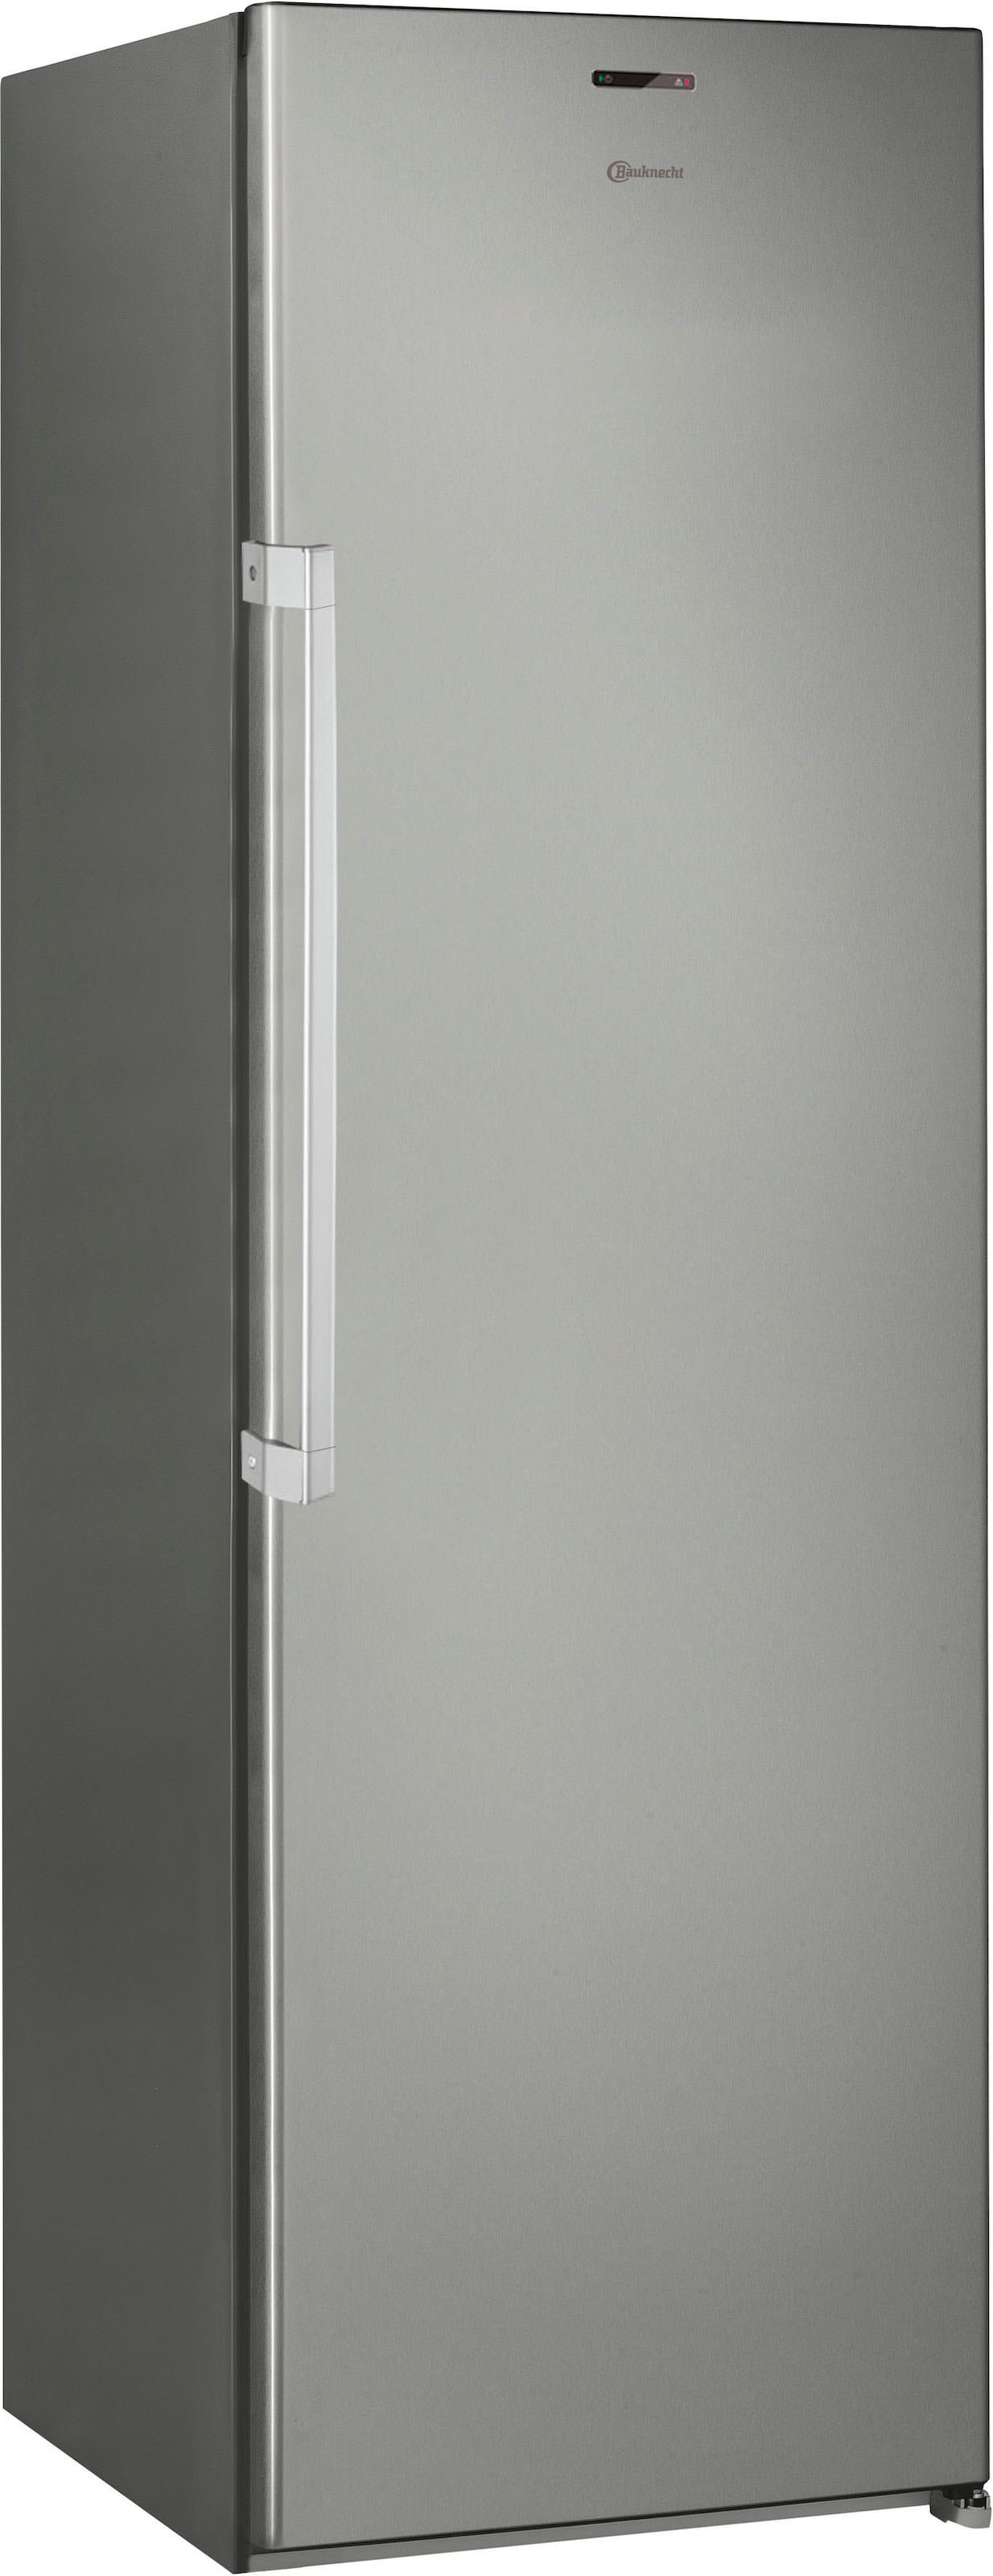 BAUKNECHT Kühlschrank "KR 19G4 IN 2", KR 19G4 IN 2, 187,5 cm hoch, 59,5 cm breit